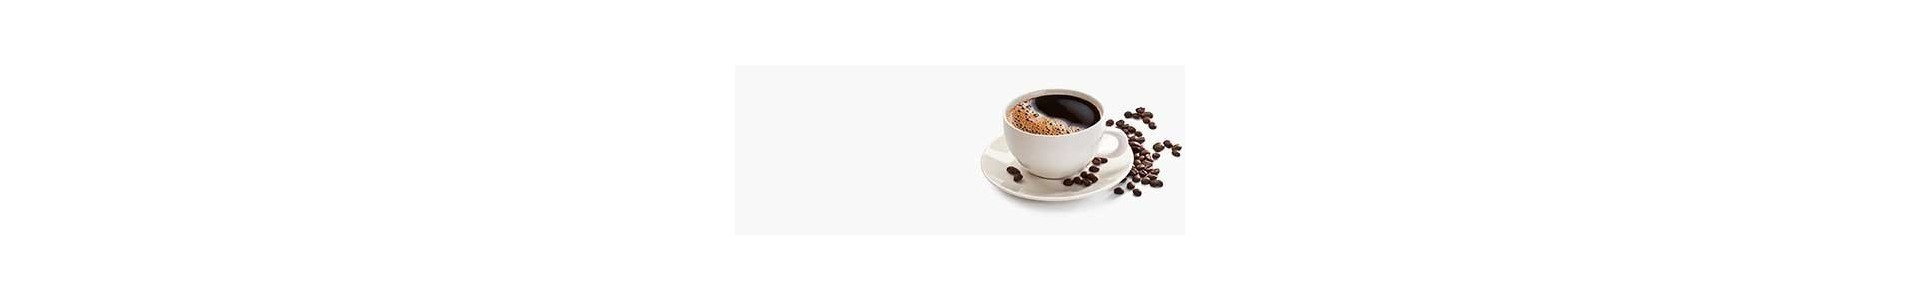 Comprar Café Online | Tienda de café | Bonisimo®